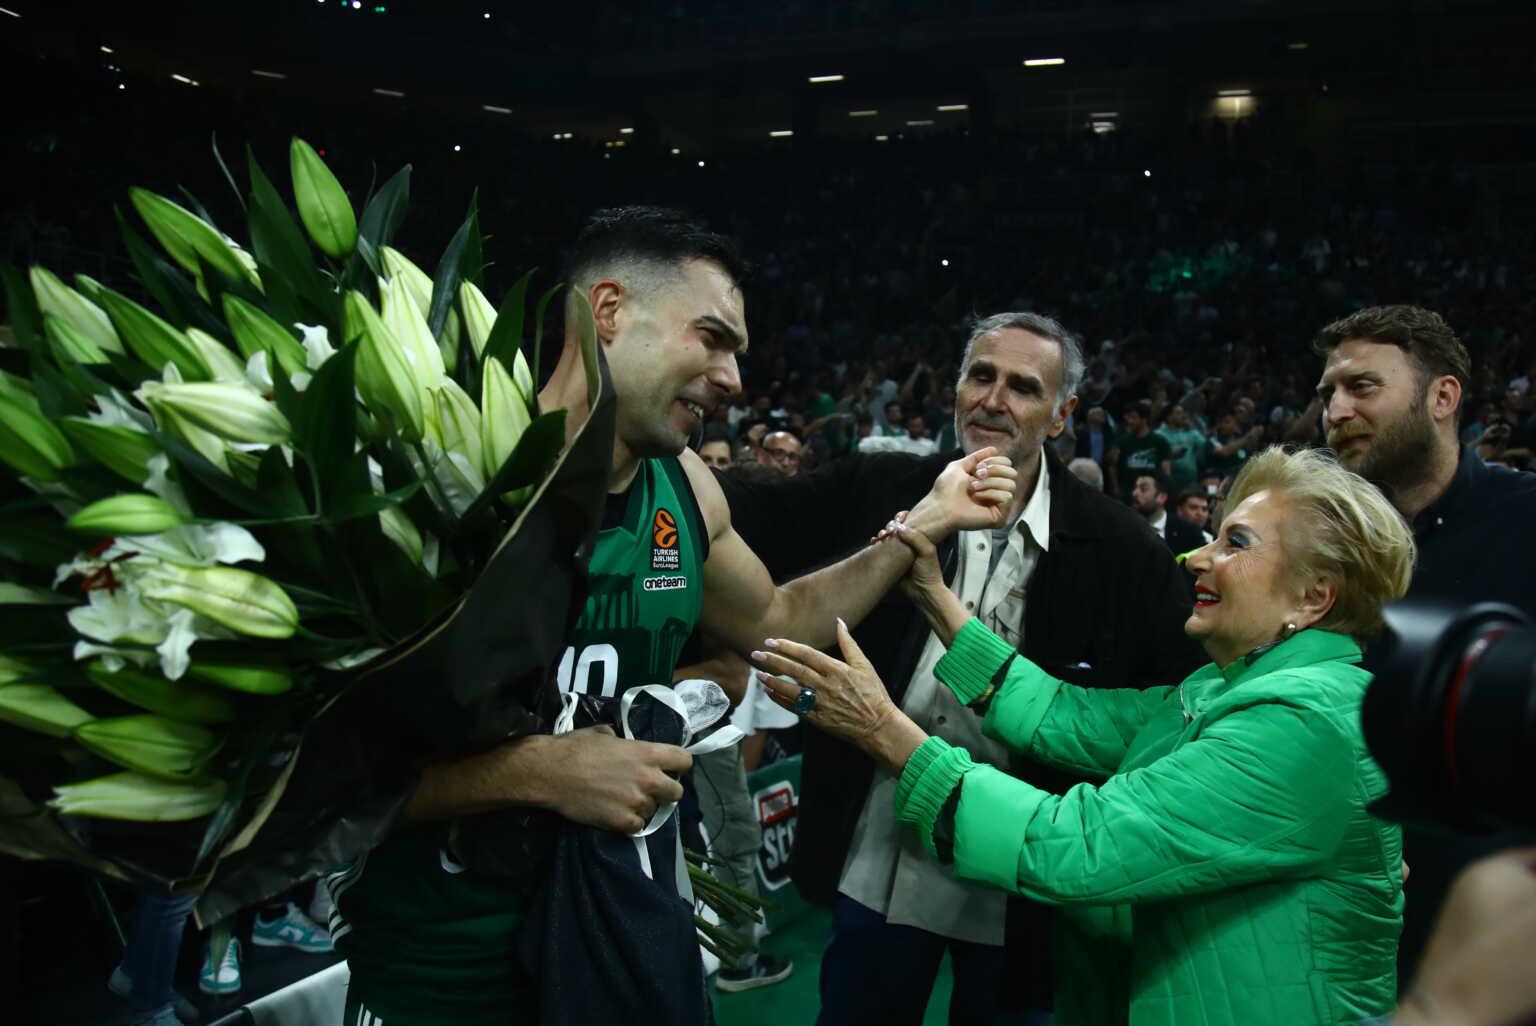 Παναθηναϊκός: Η ανθοδέσμη στον Σλούκα από τη μητέρα του Δημήτρη Γιαννακόπουλου μετά την πρόκριση στο Final Four